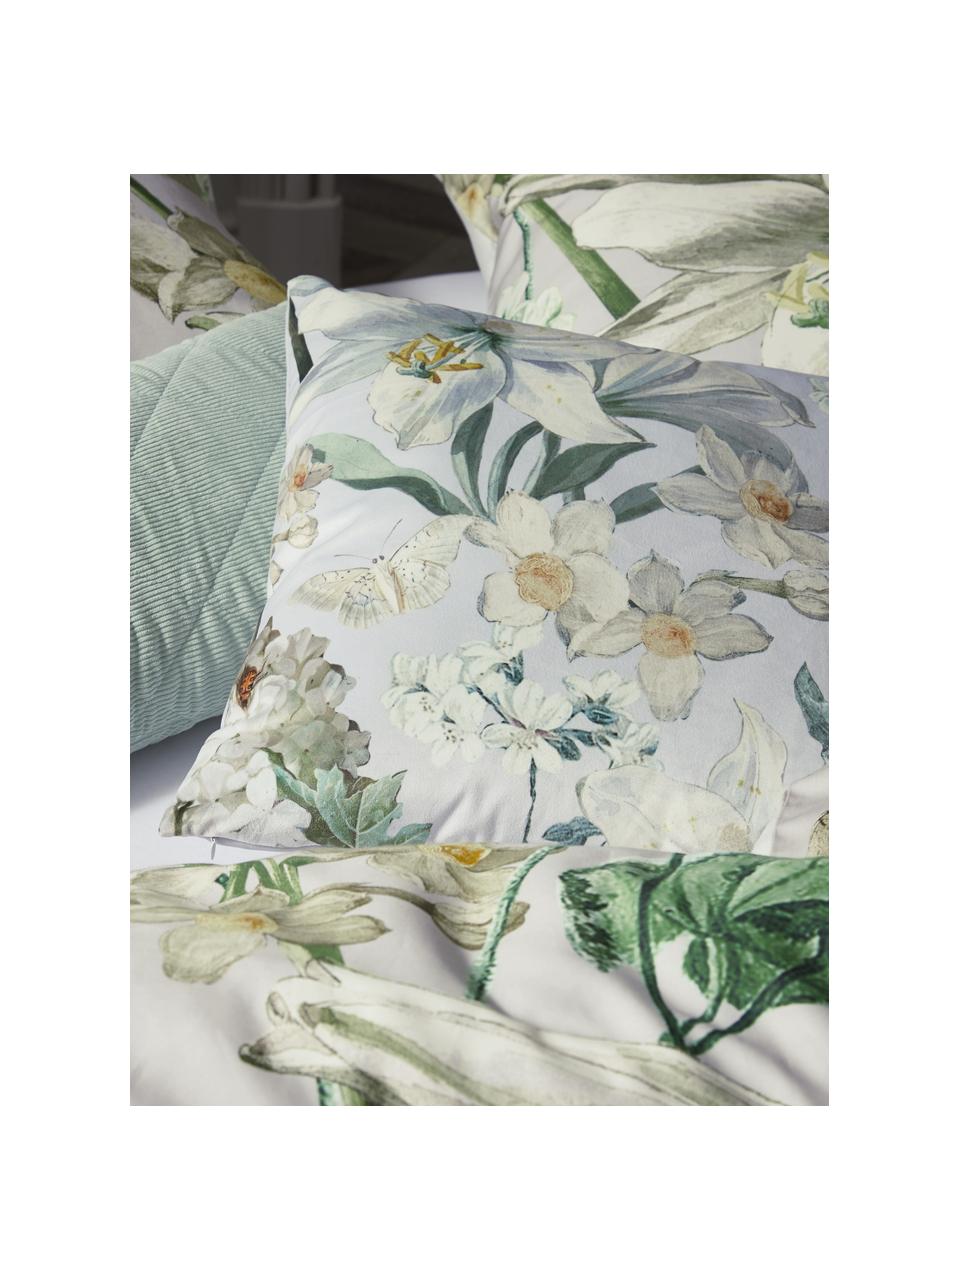 Coussin en velours imprimé floral Rosalee, Gris clair, blanc, tons verts et beige